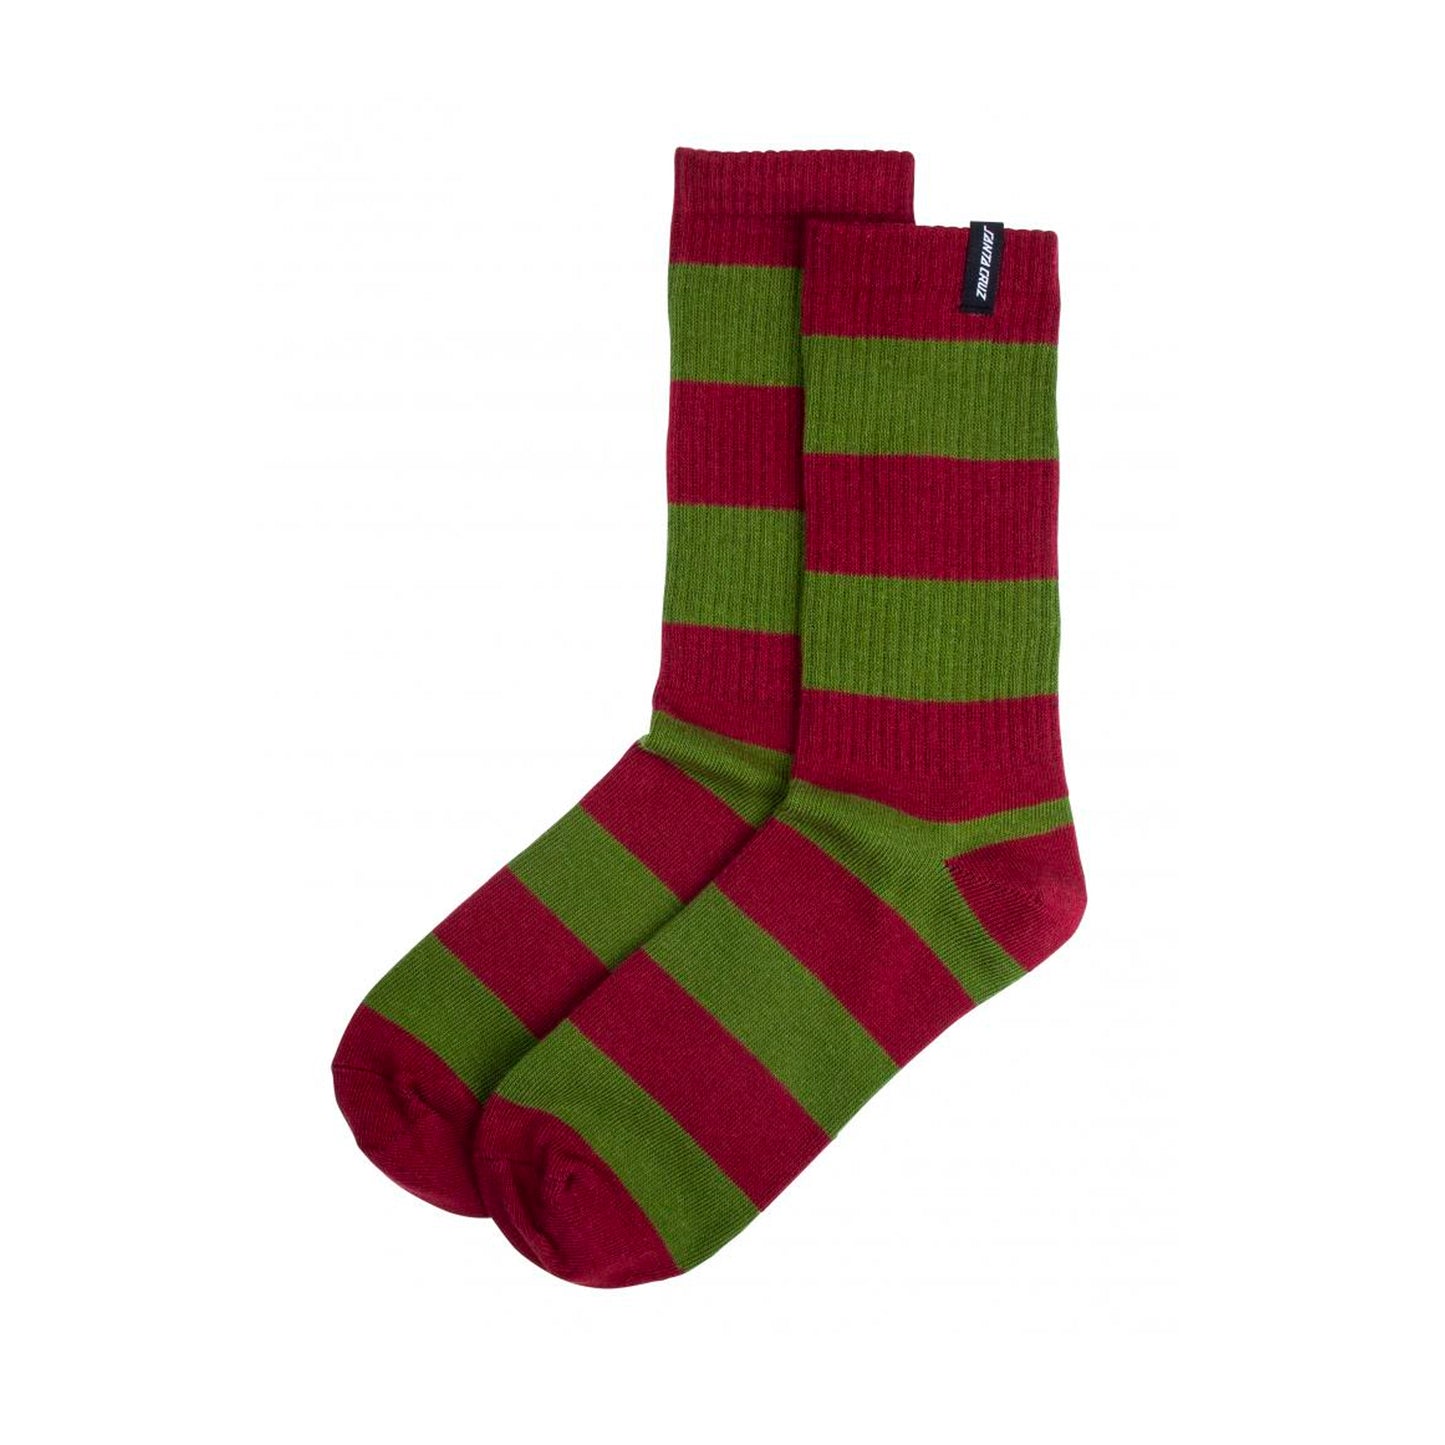 Santa Cruz Socks Dip Sock - Wine/Olive - Prime Delux Store